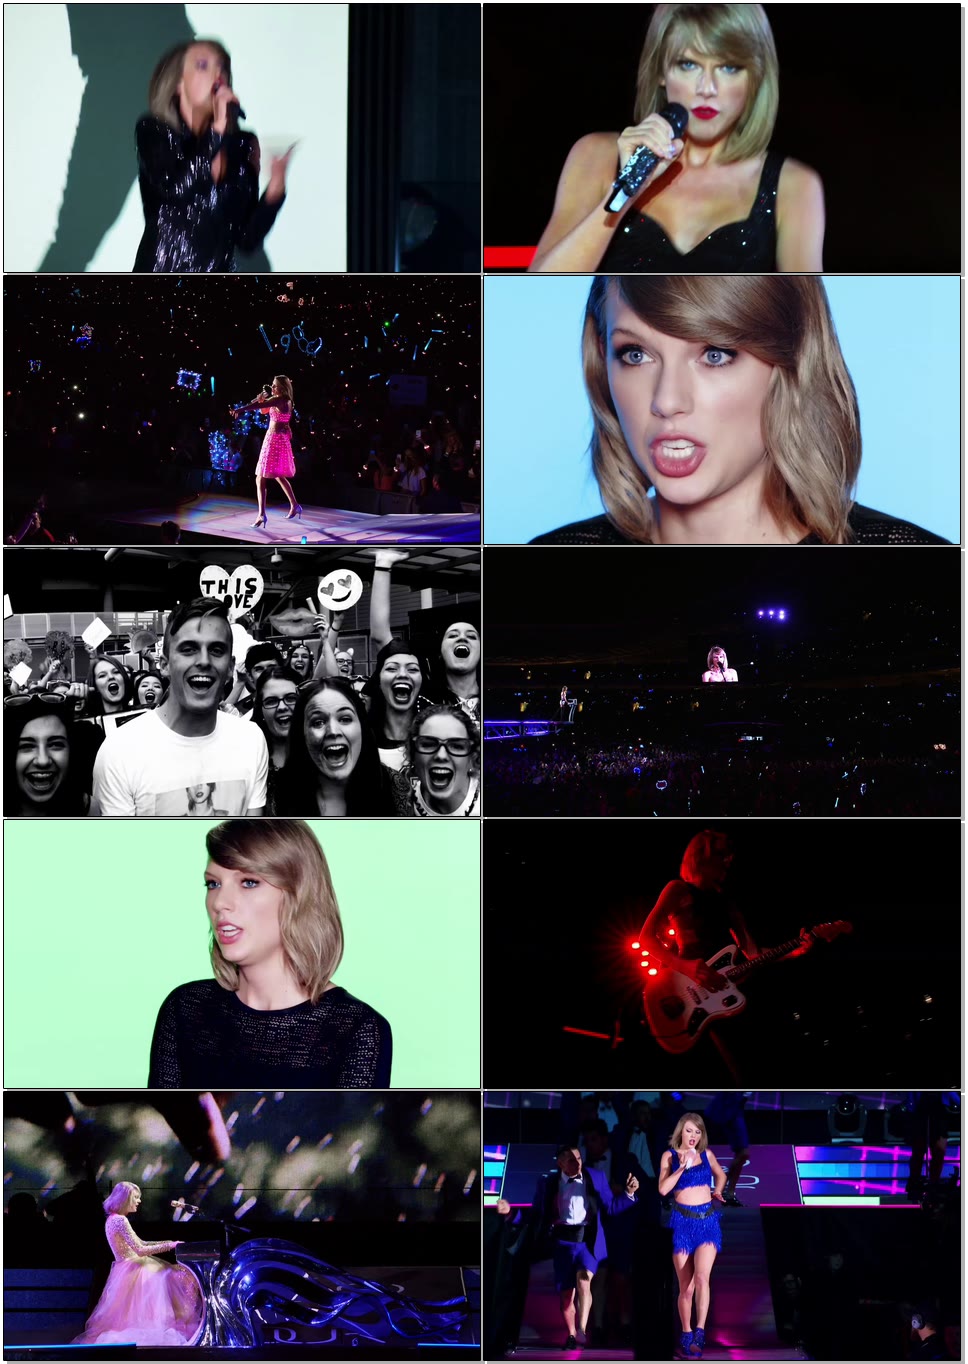 Taylor Swift 泰勒·斯威夫特 – The 1989 World Tour Live 1989巡回演唱会悉尼站 (2015) 1080P蓝光原盘 [BDMV 22.9G]Blu-ray、欧美演唱会、蓝光演唱会10